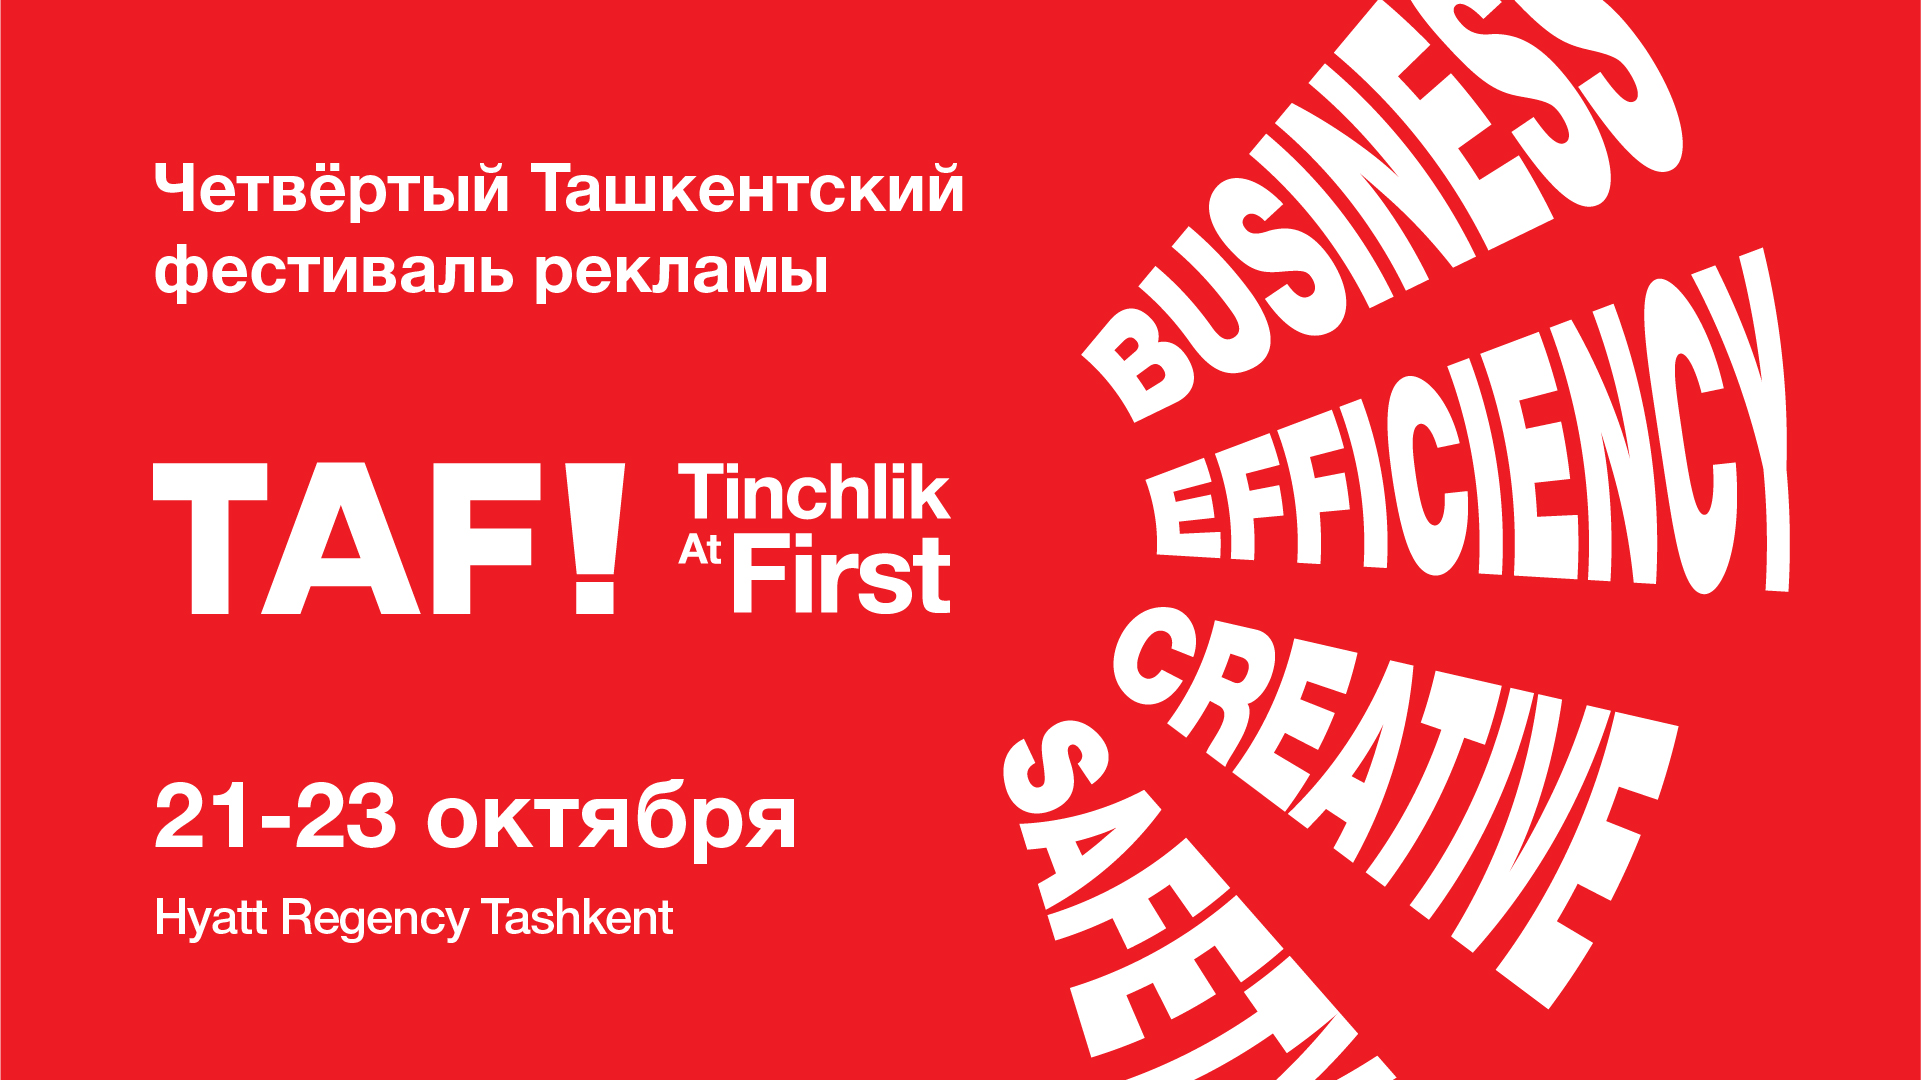 В Ташкенте пройдет четвёртый фестиваль рекламы TAF!22